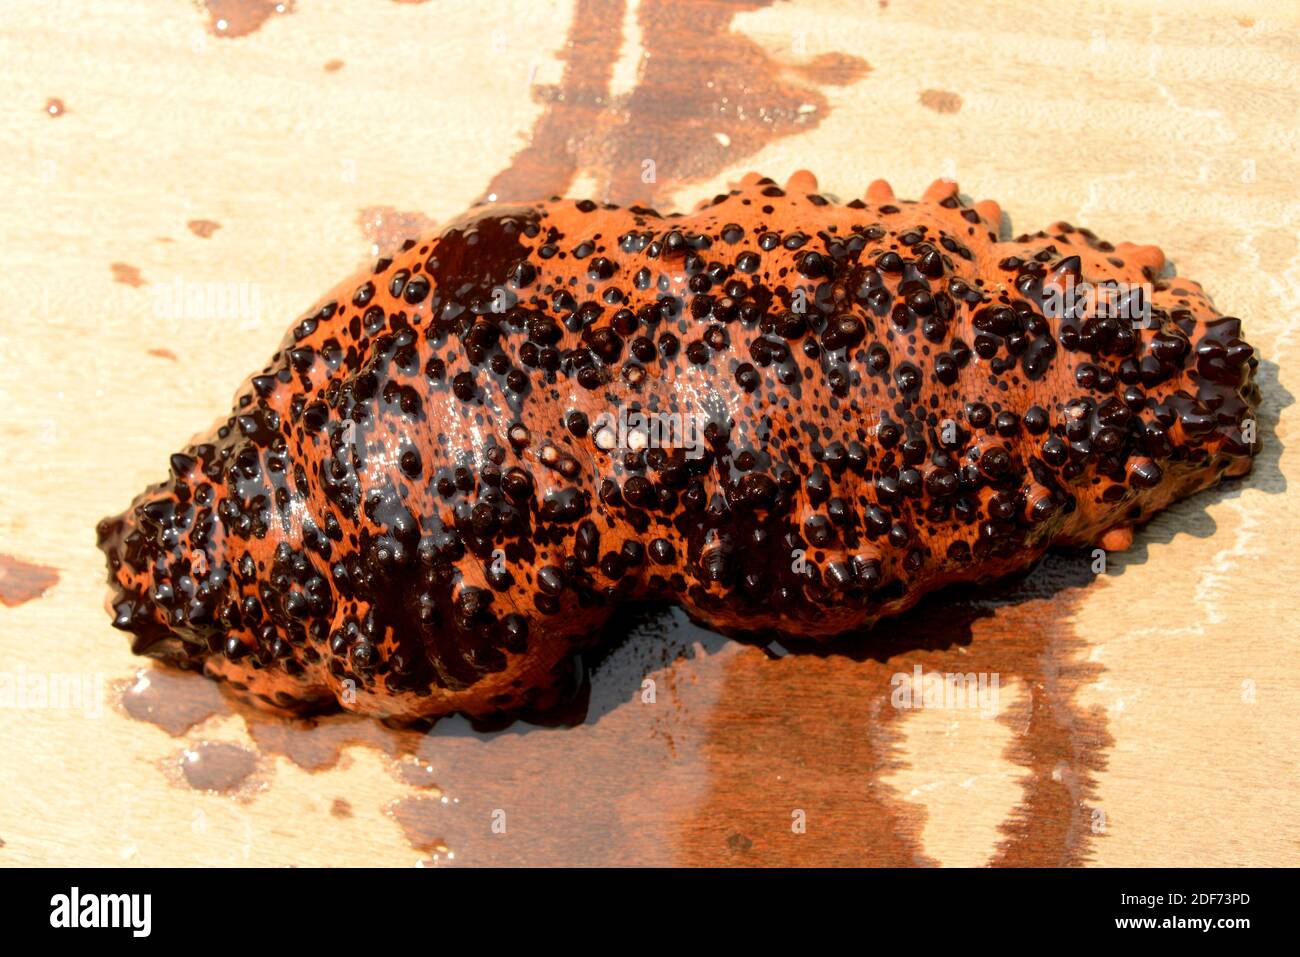 El pepino de chocolate (Isostichopus badionotus) es un pepino de mar nativo de las aguas tropicales del Océano Atlántico. Esta foto fue tomada en Paraty Foto de stock